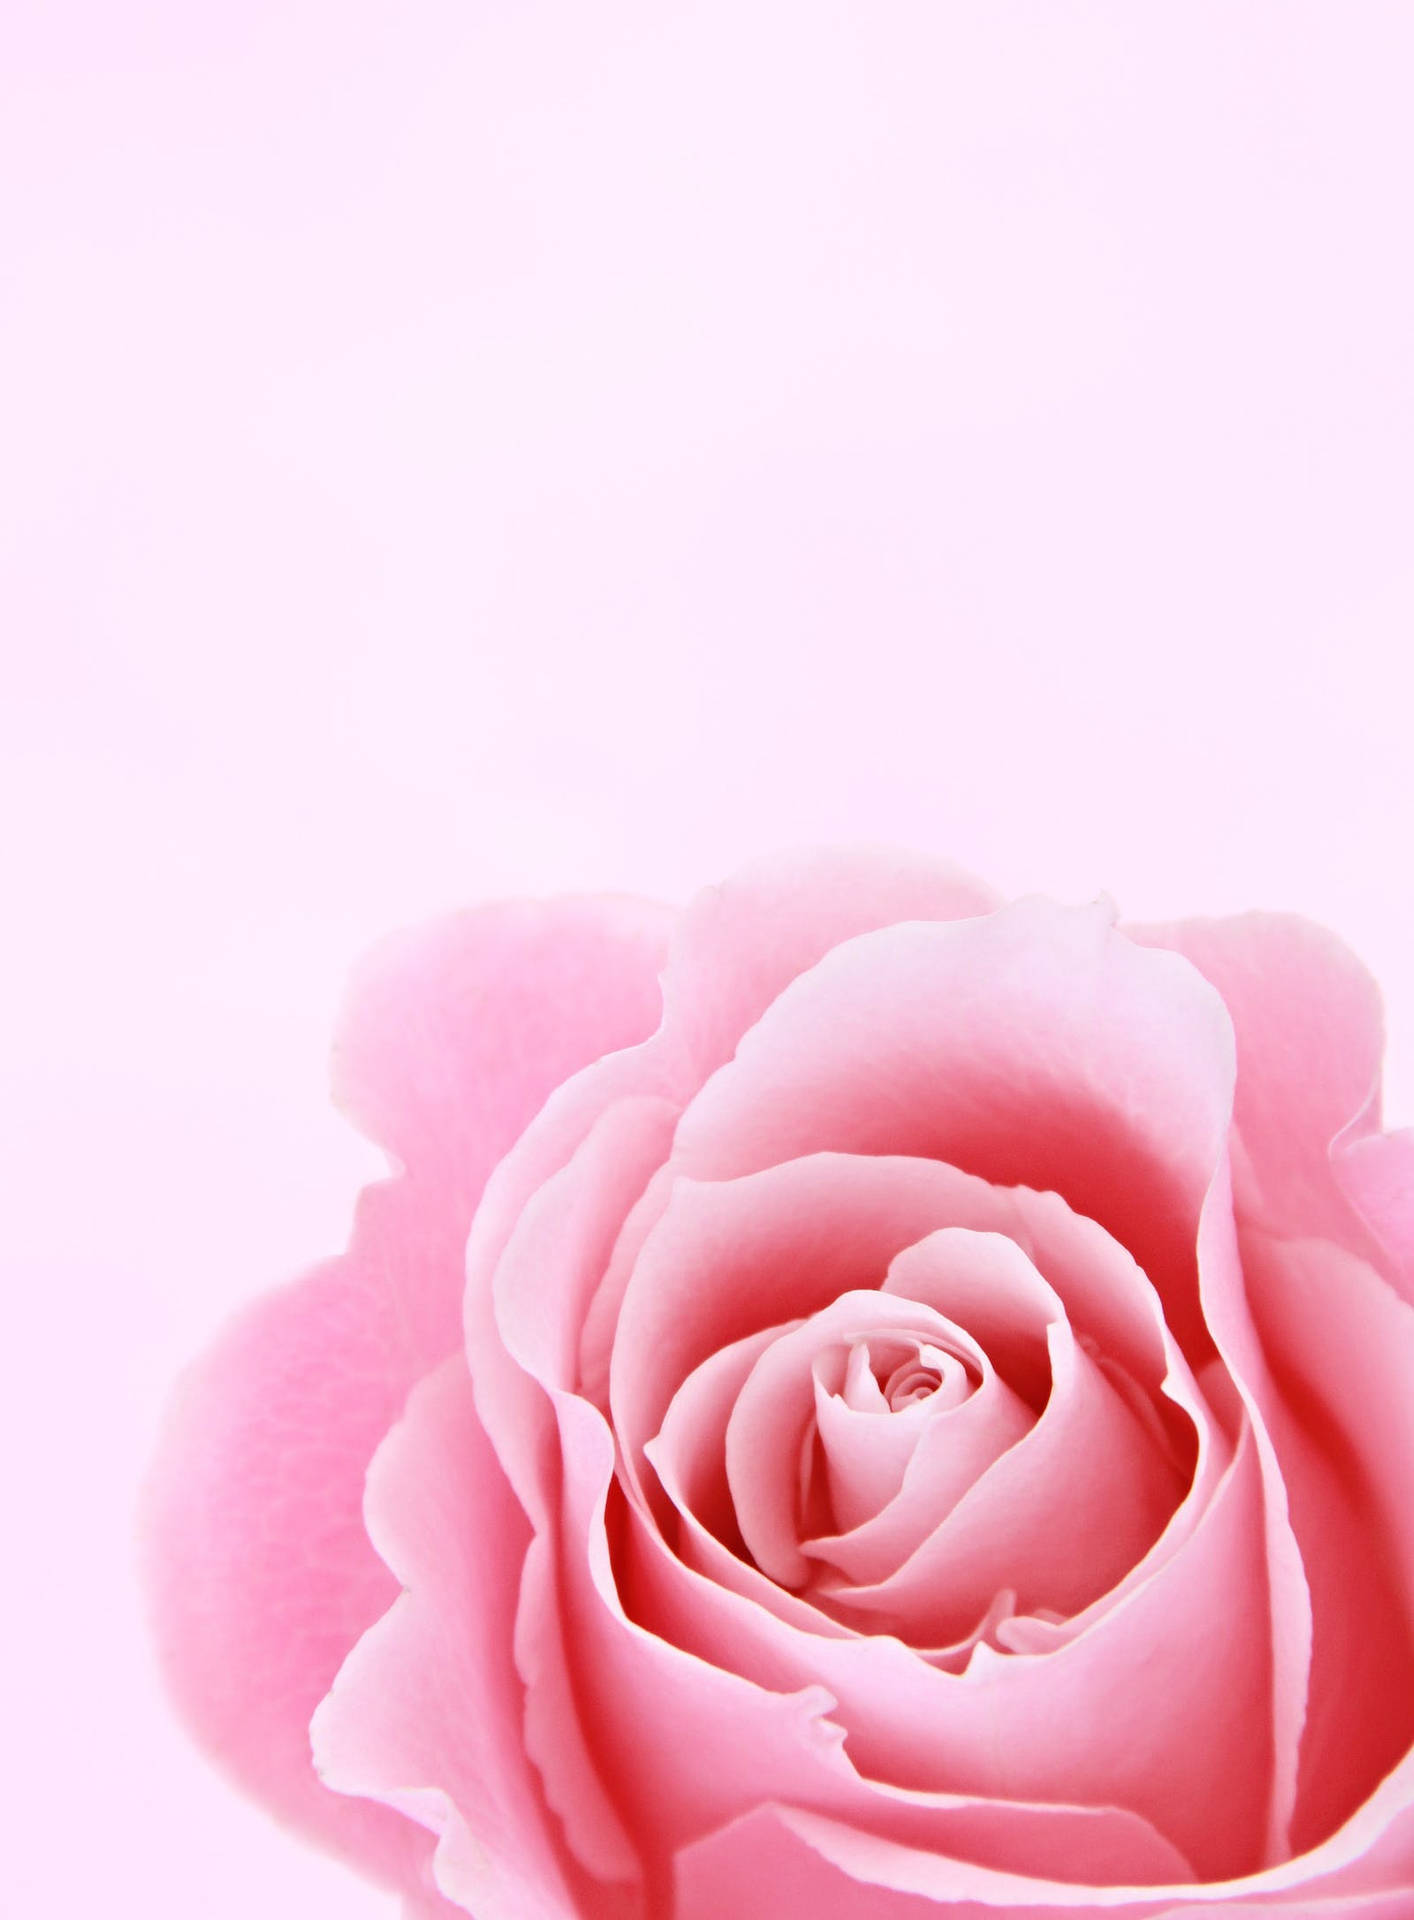 Garden Rose Flower Wallpapers  Top Free Garden Rose Flower Backgrounds   WallpaperAccess